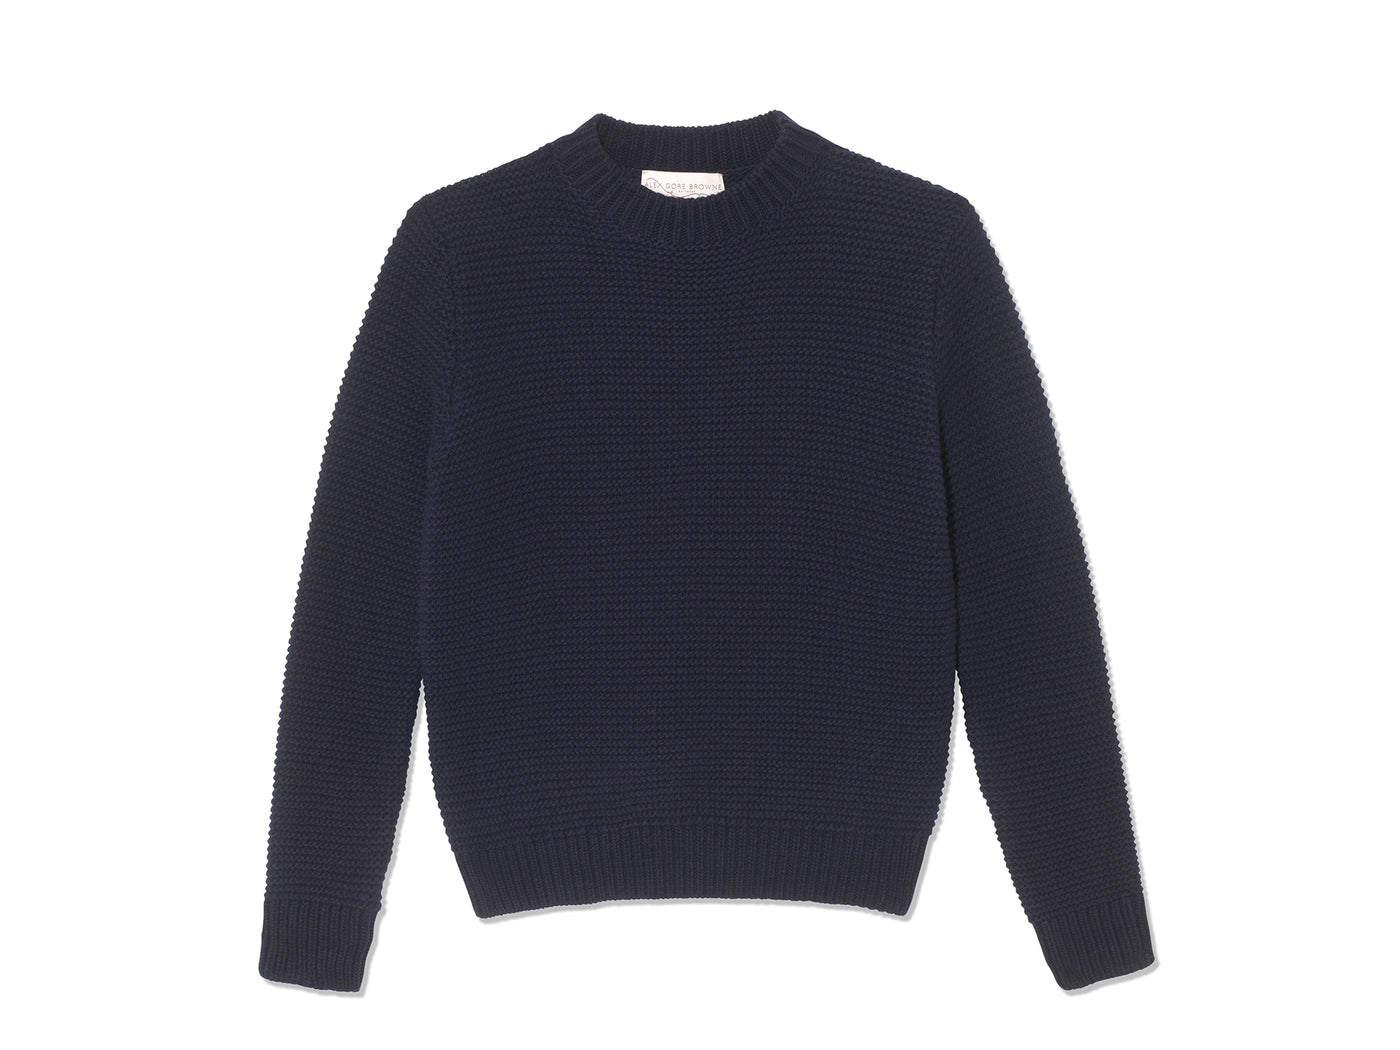 Purl Stitch Sweater - Navy